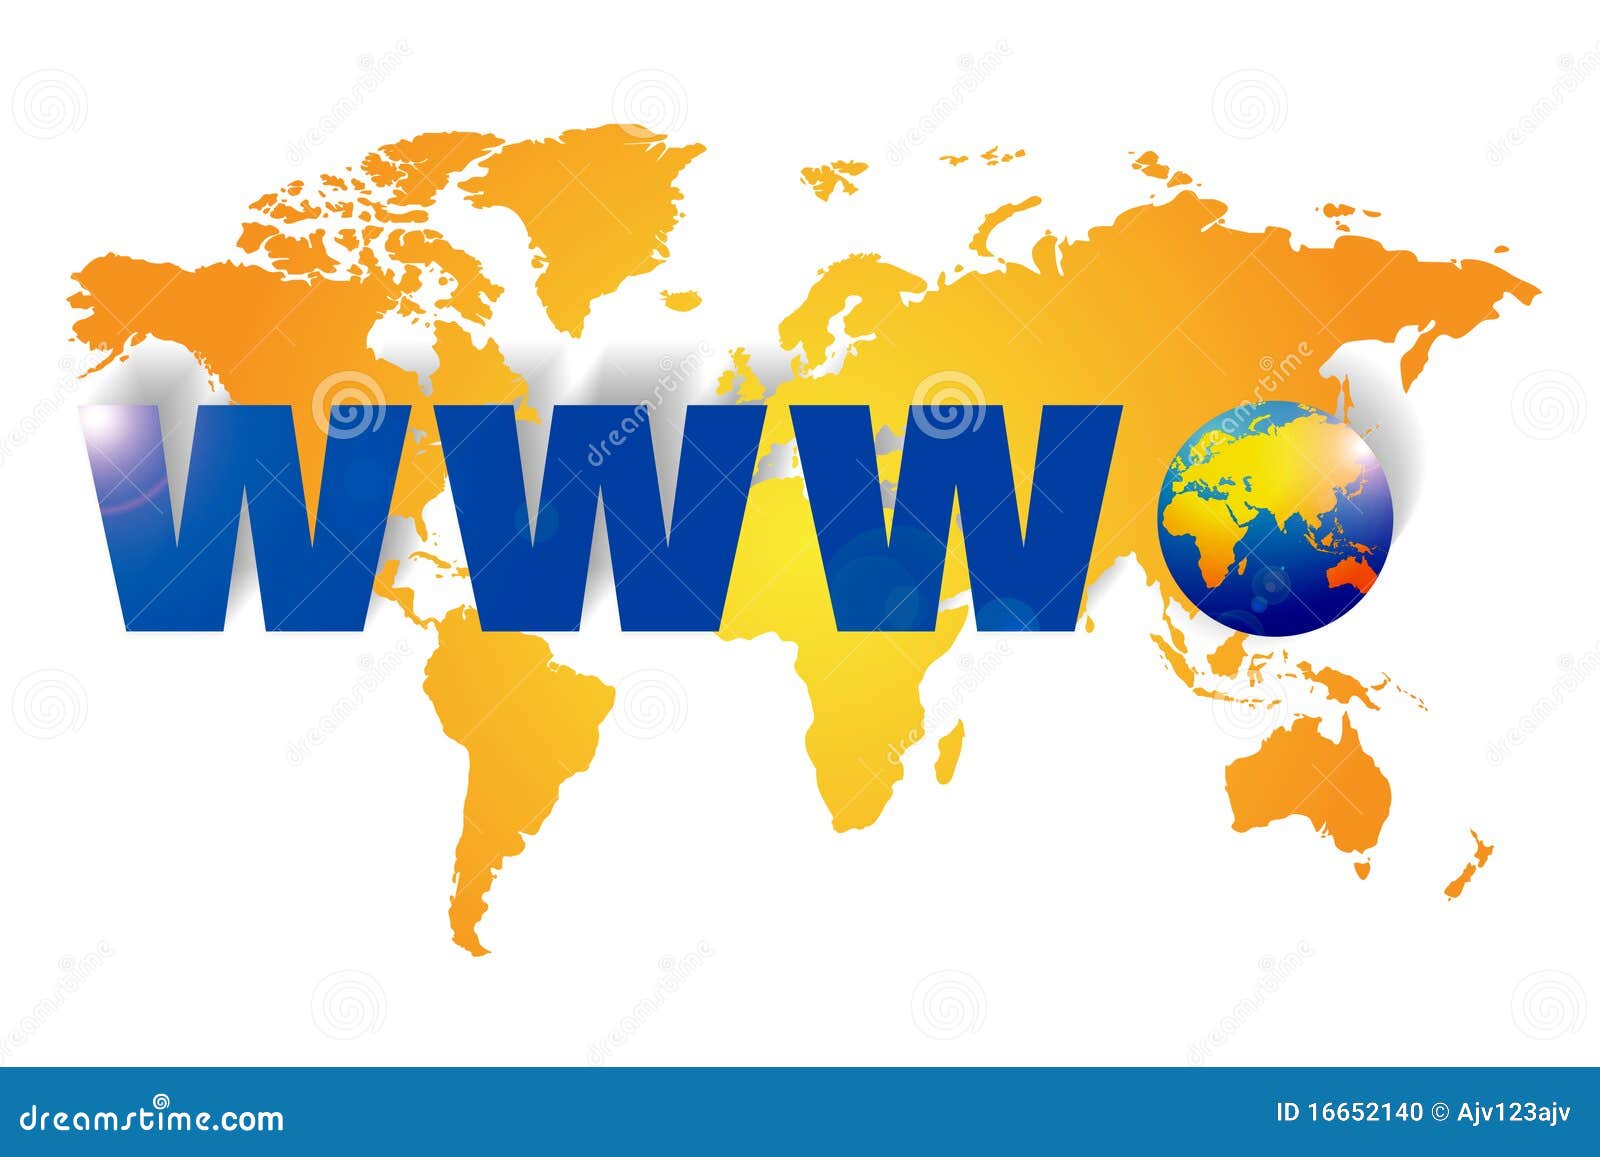 world wide web - www